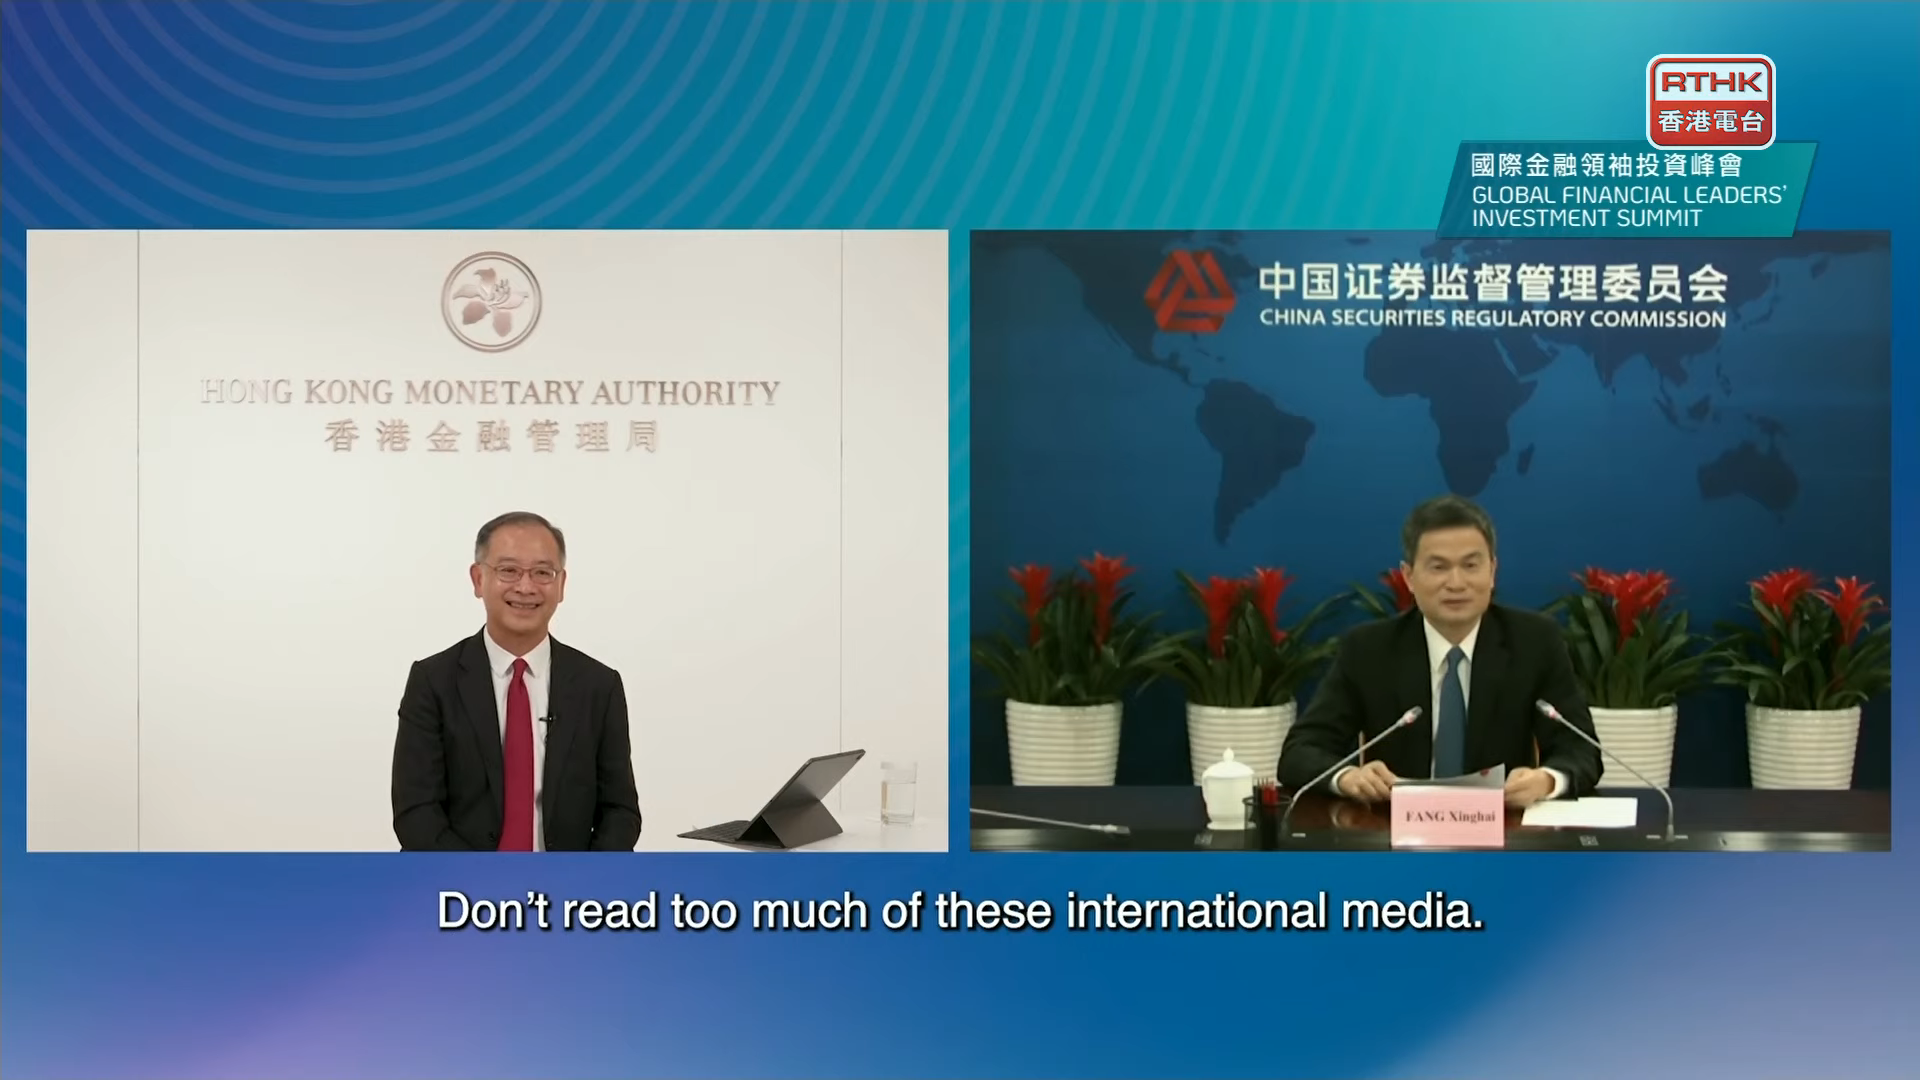 中國證監會副主席方星海在演講中批評，外國媒體對中國的報道不全面而且短視，建議不應該閱讀太多國際媒體。(香港電台直播截圖)